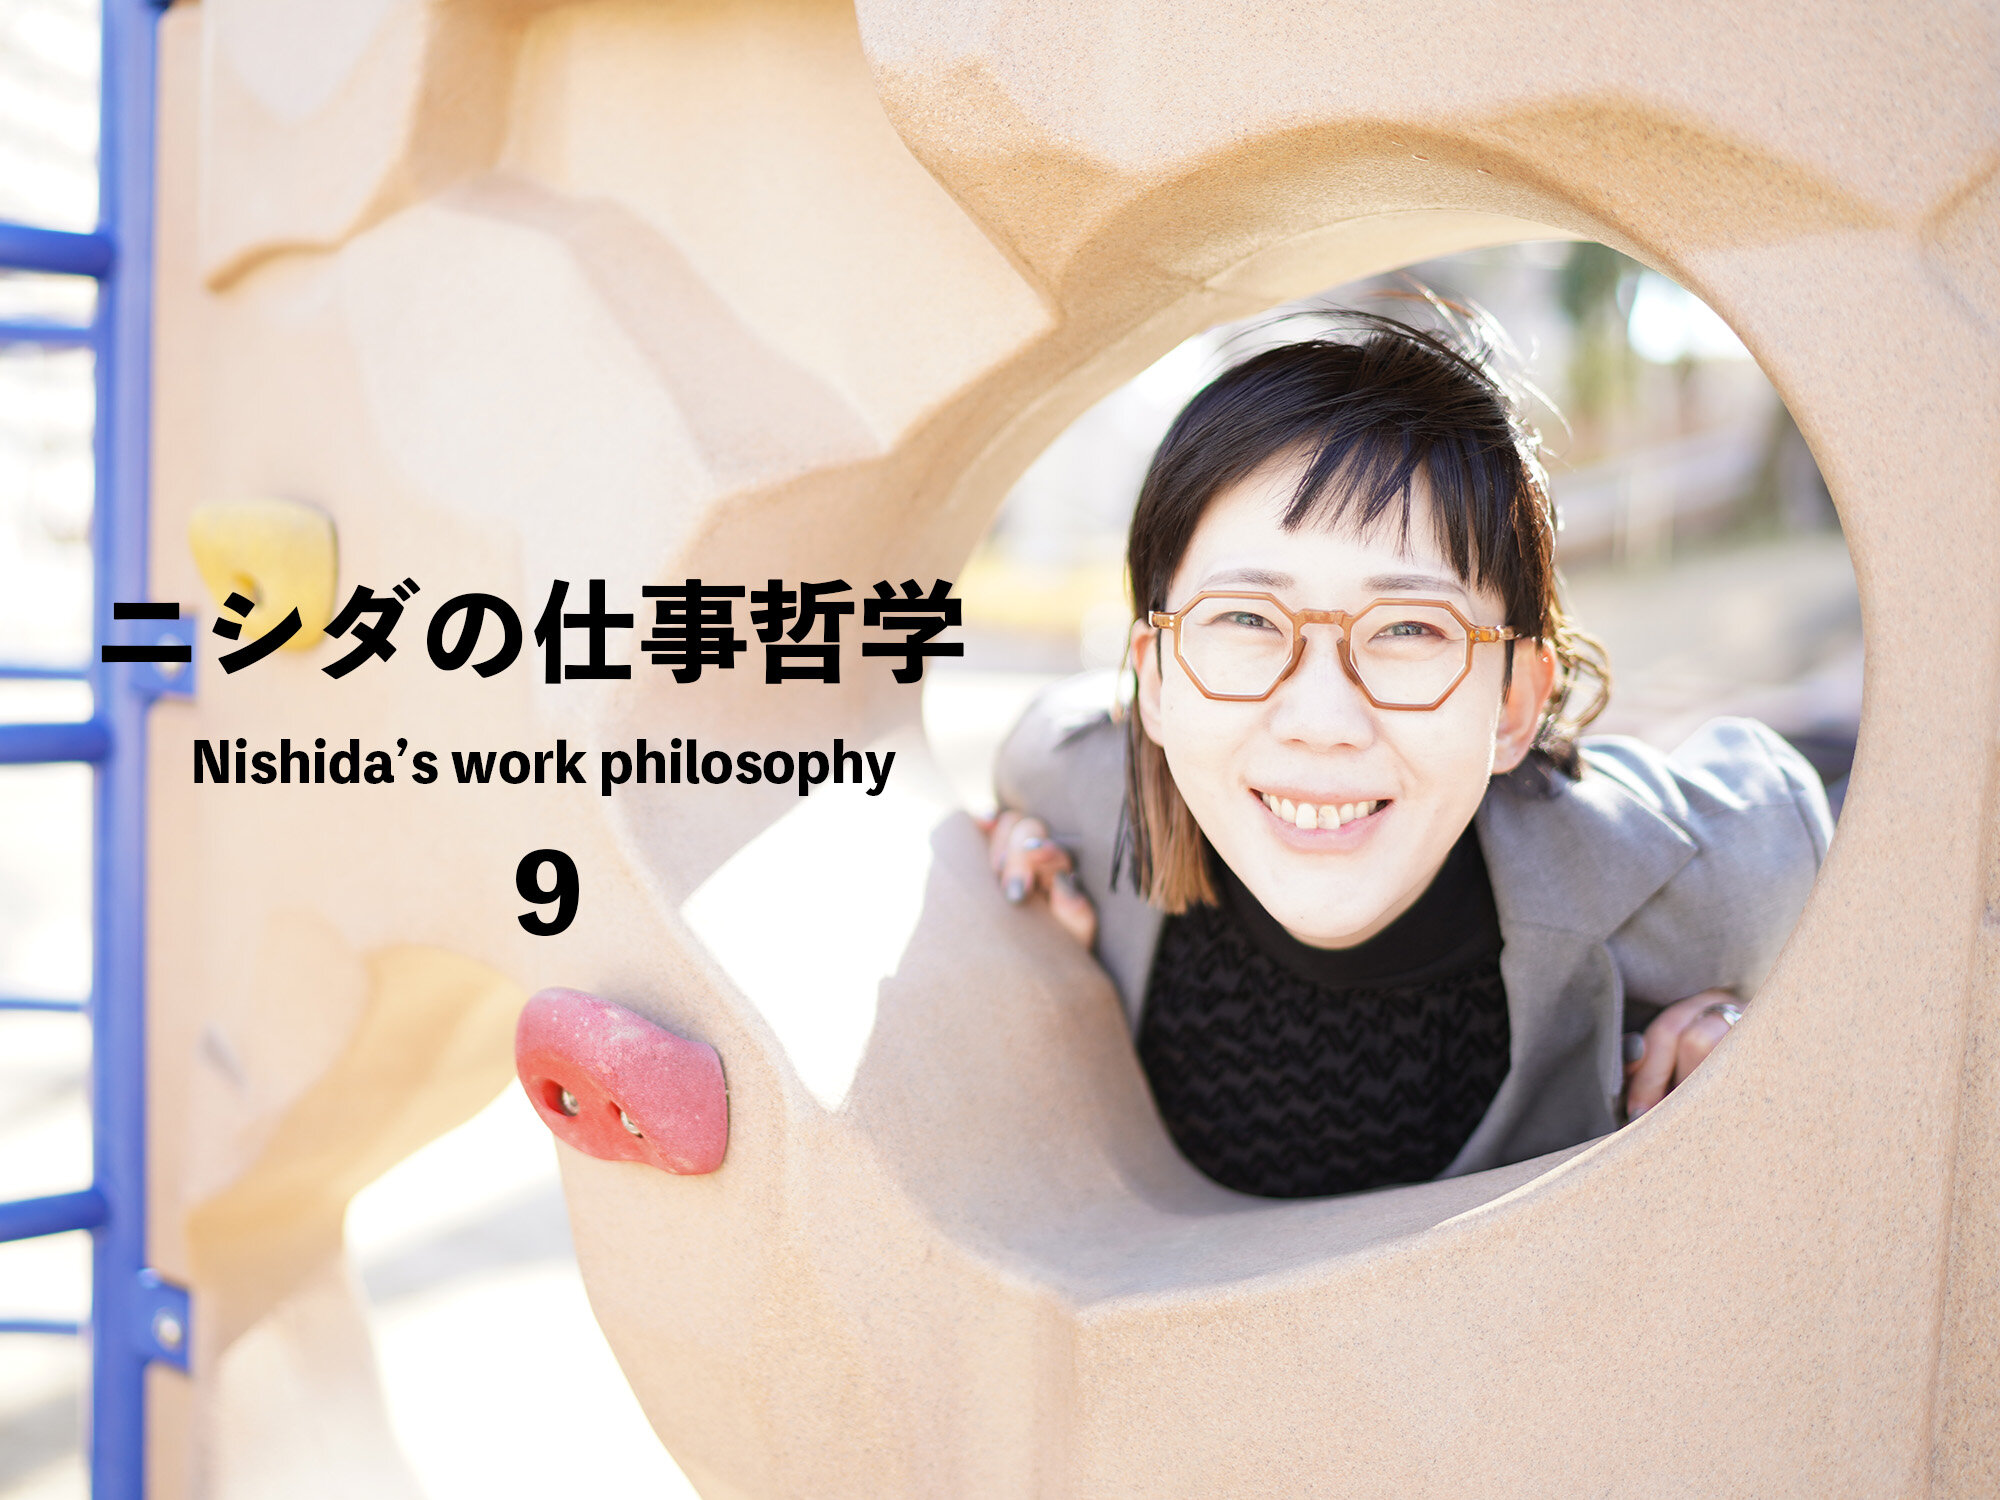 １分で読めるニシダの仕事哲学⑩「不安な時こそ、仕事の幸せを見つめ直す。」